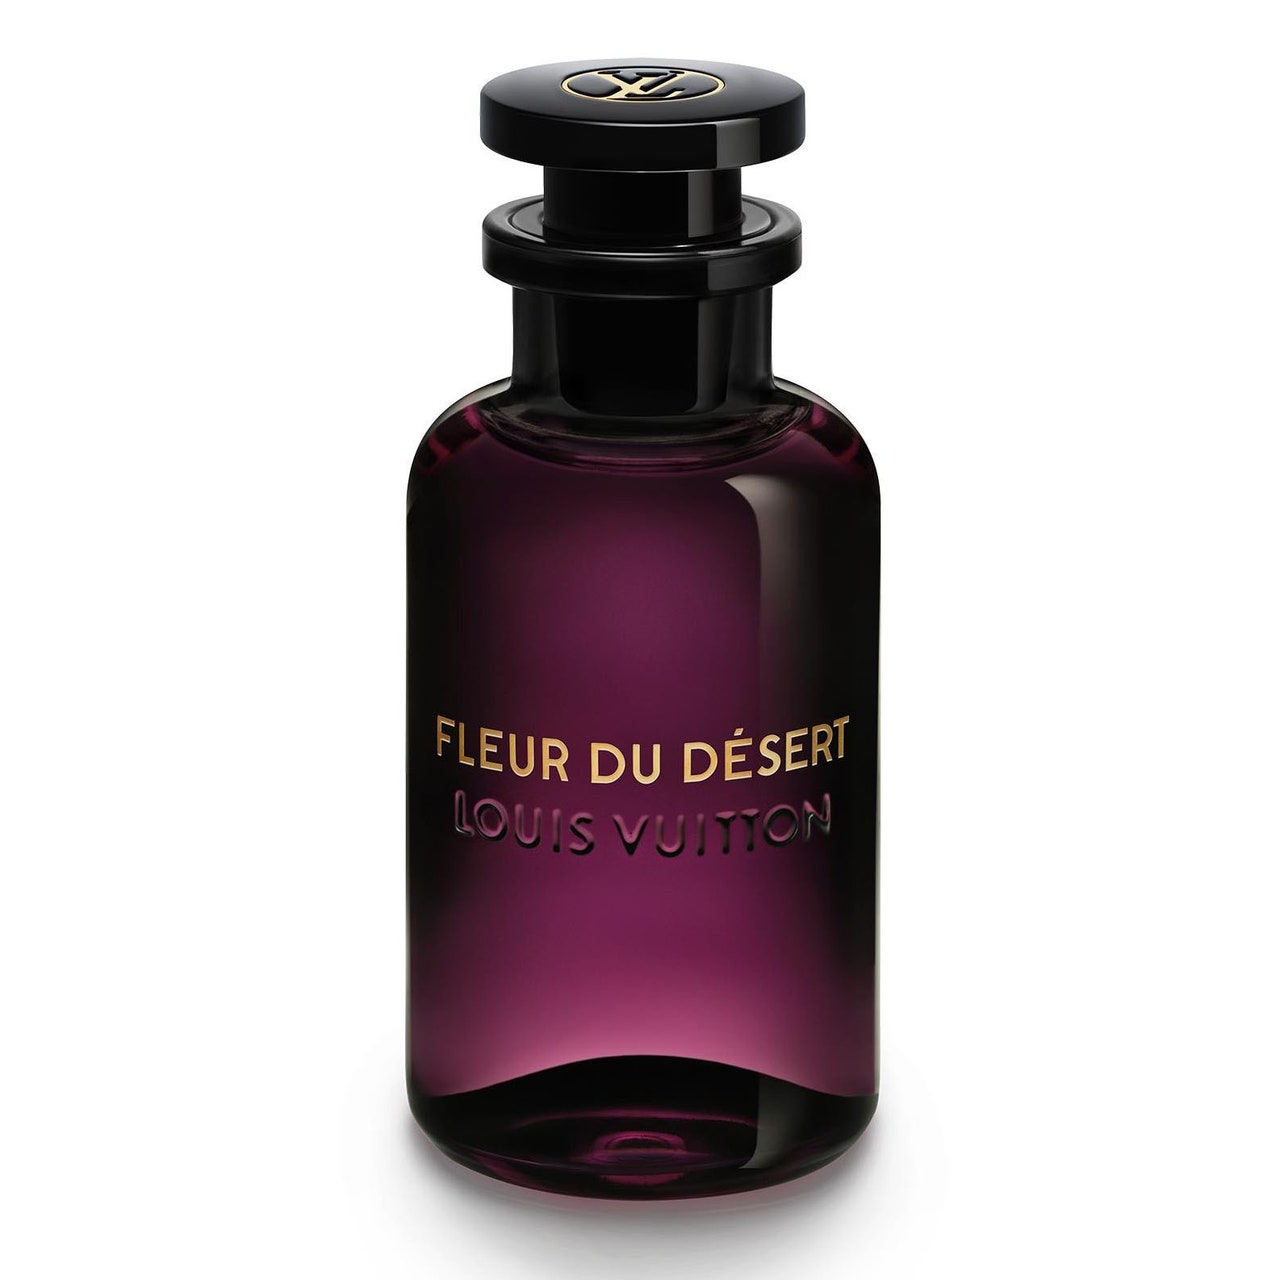 Lila Glasflasche Louis Vuitton Fleur du Désert auf weißem Hintergrund